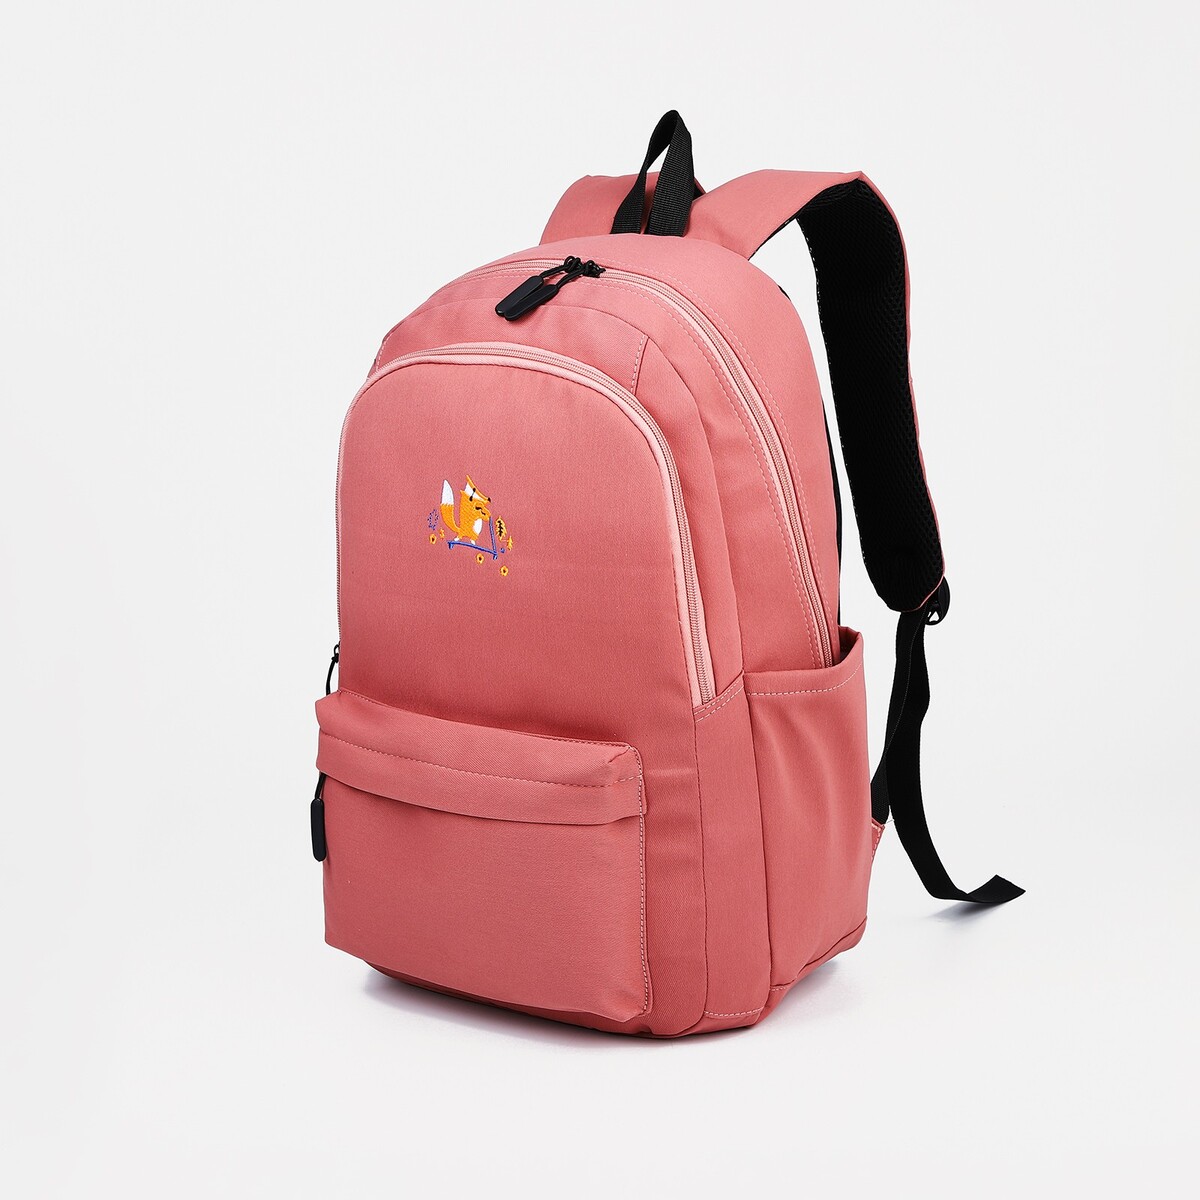 Рюкзак молодежный из текстиля, 2 отдела на молниях, 3 кармана, цвет розовый рюкзак молодежный из текстиля 4 кармана розовый